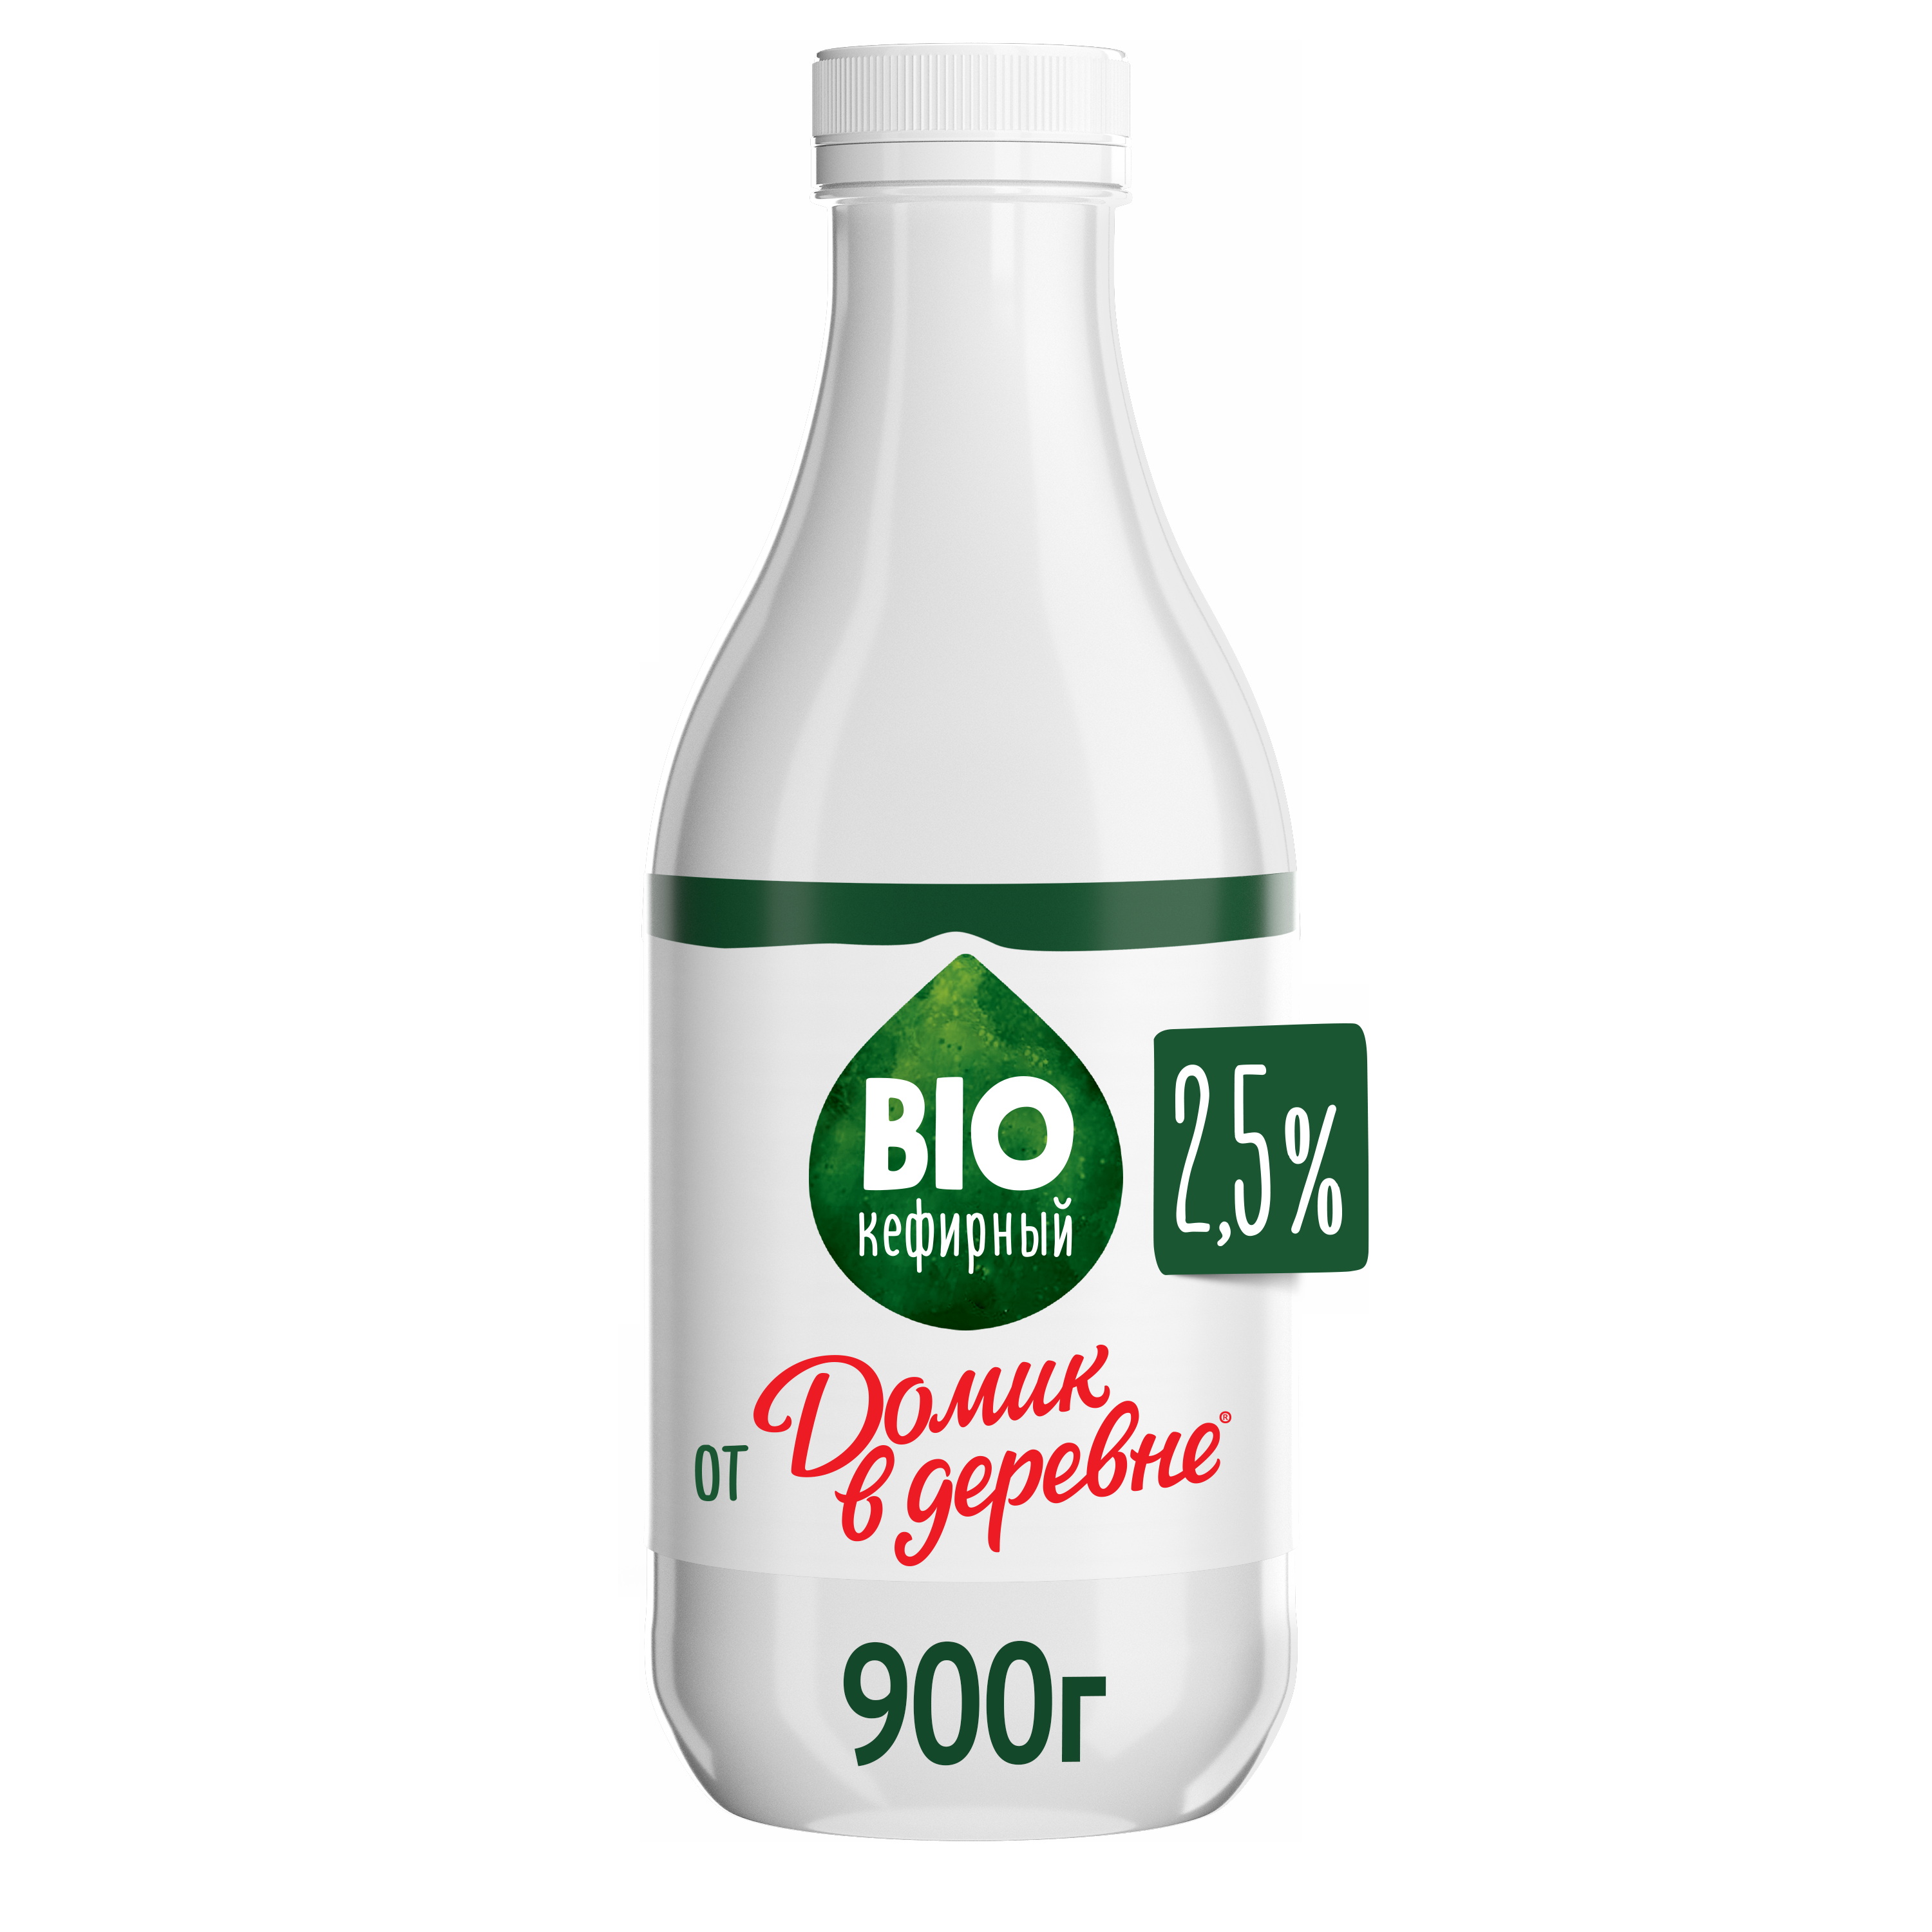 Биокефирный продукт Домик в Деревне 2,5% 900 мл